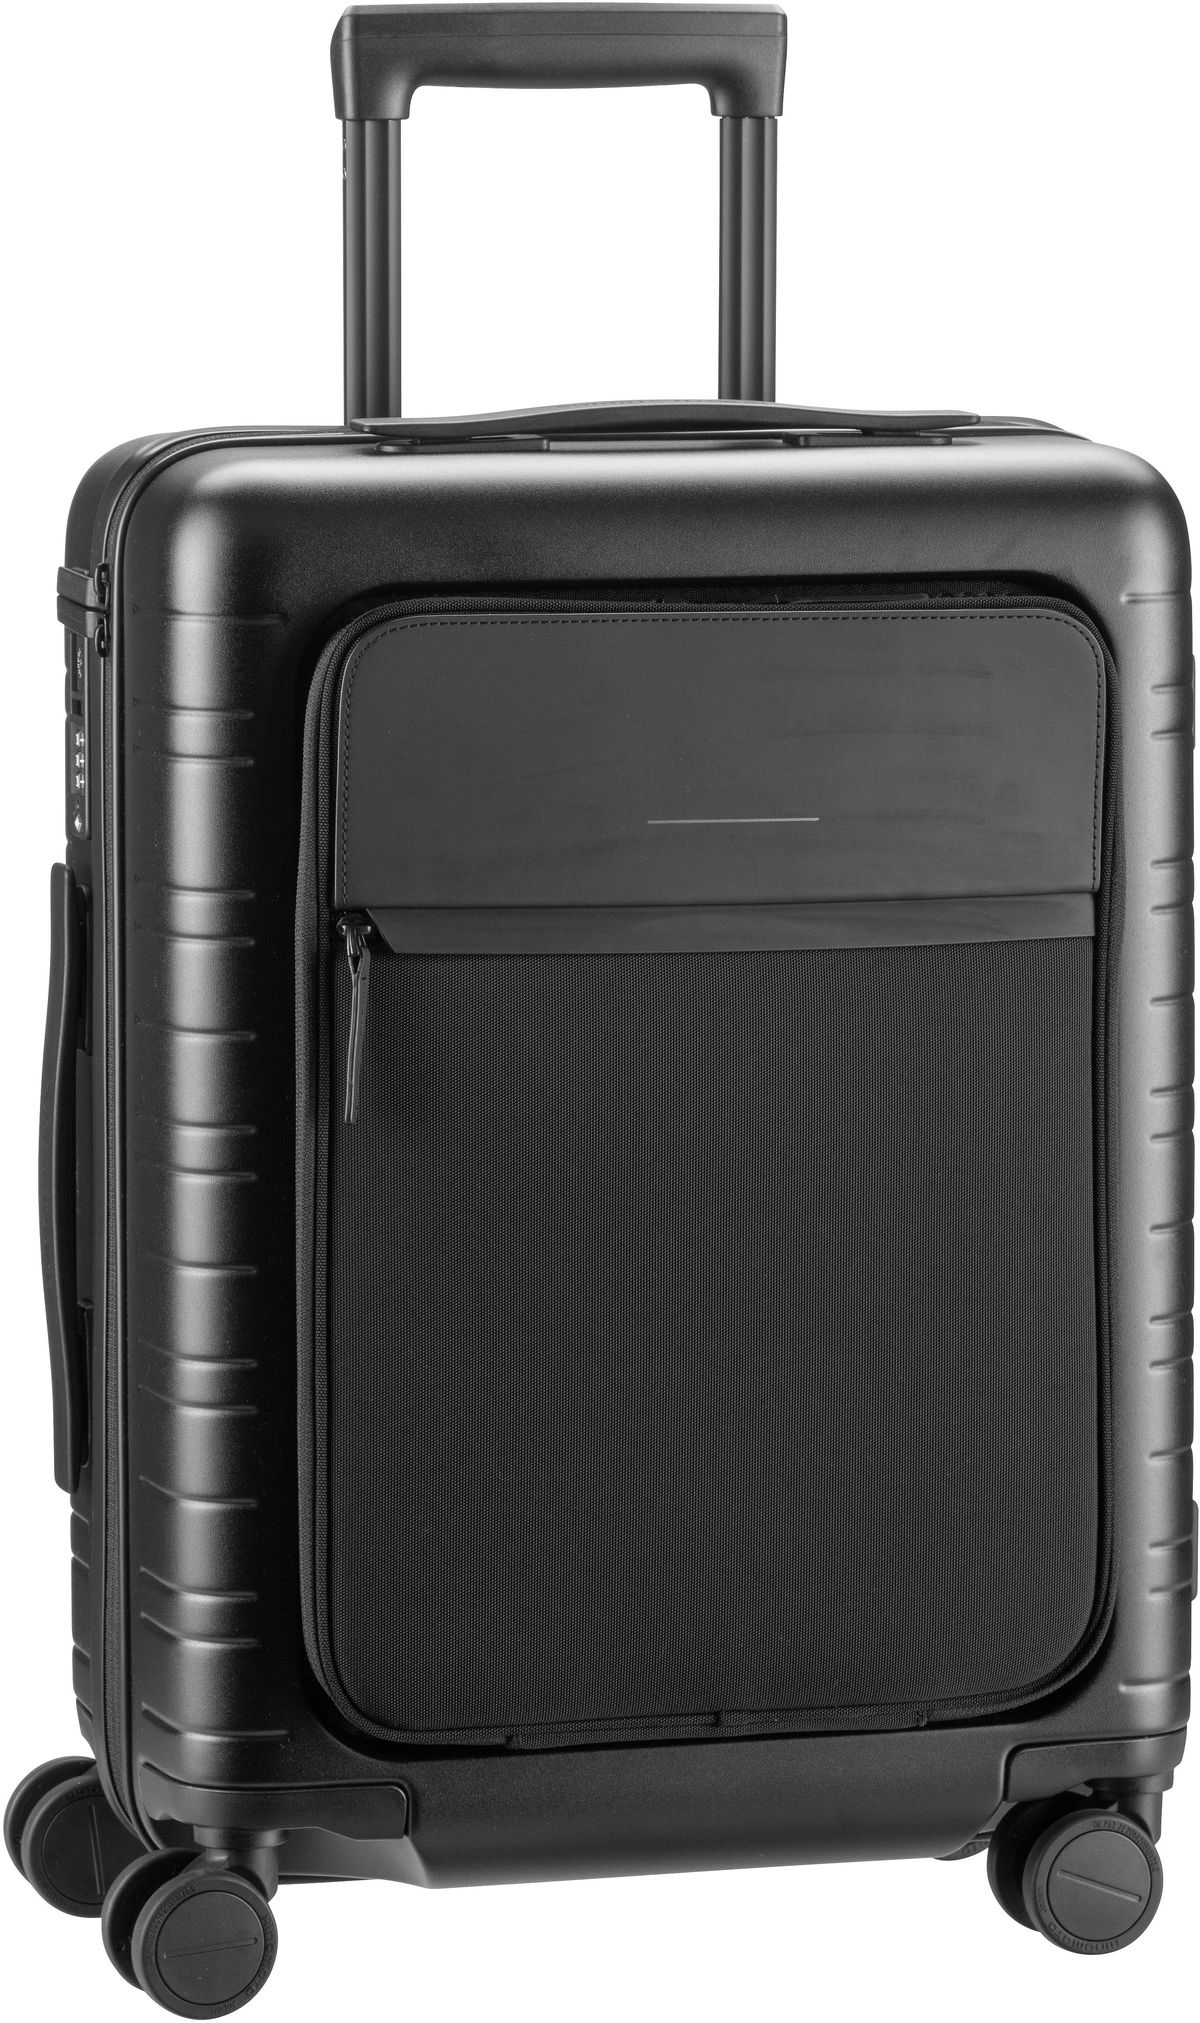 Horizn Studios  M5 Smart Cabin Luggage - Koffer mit 4 Rollen - Schwarz (All Black)